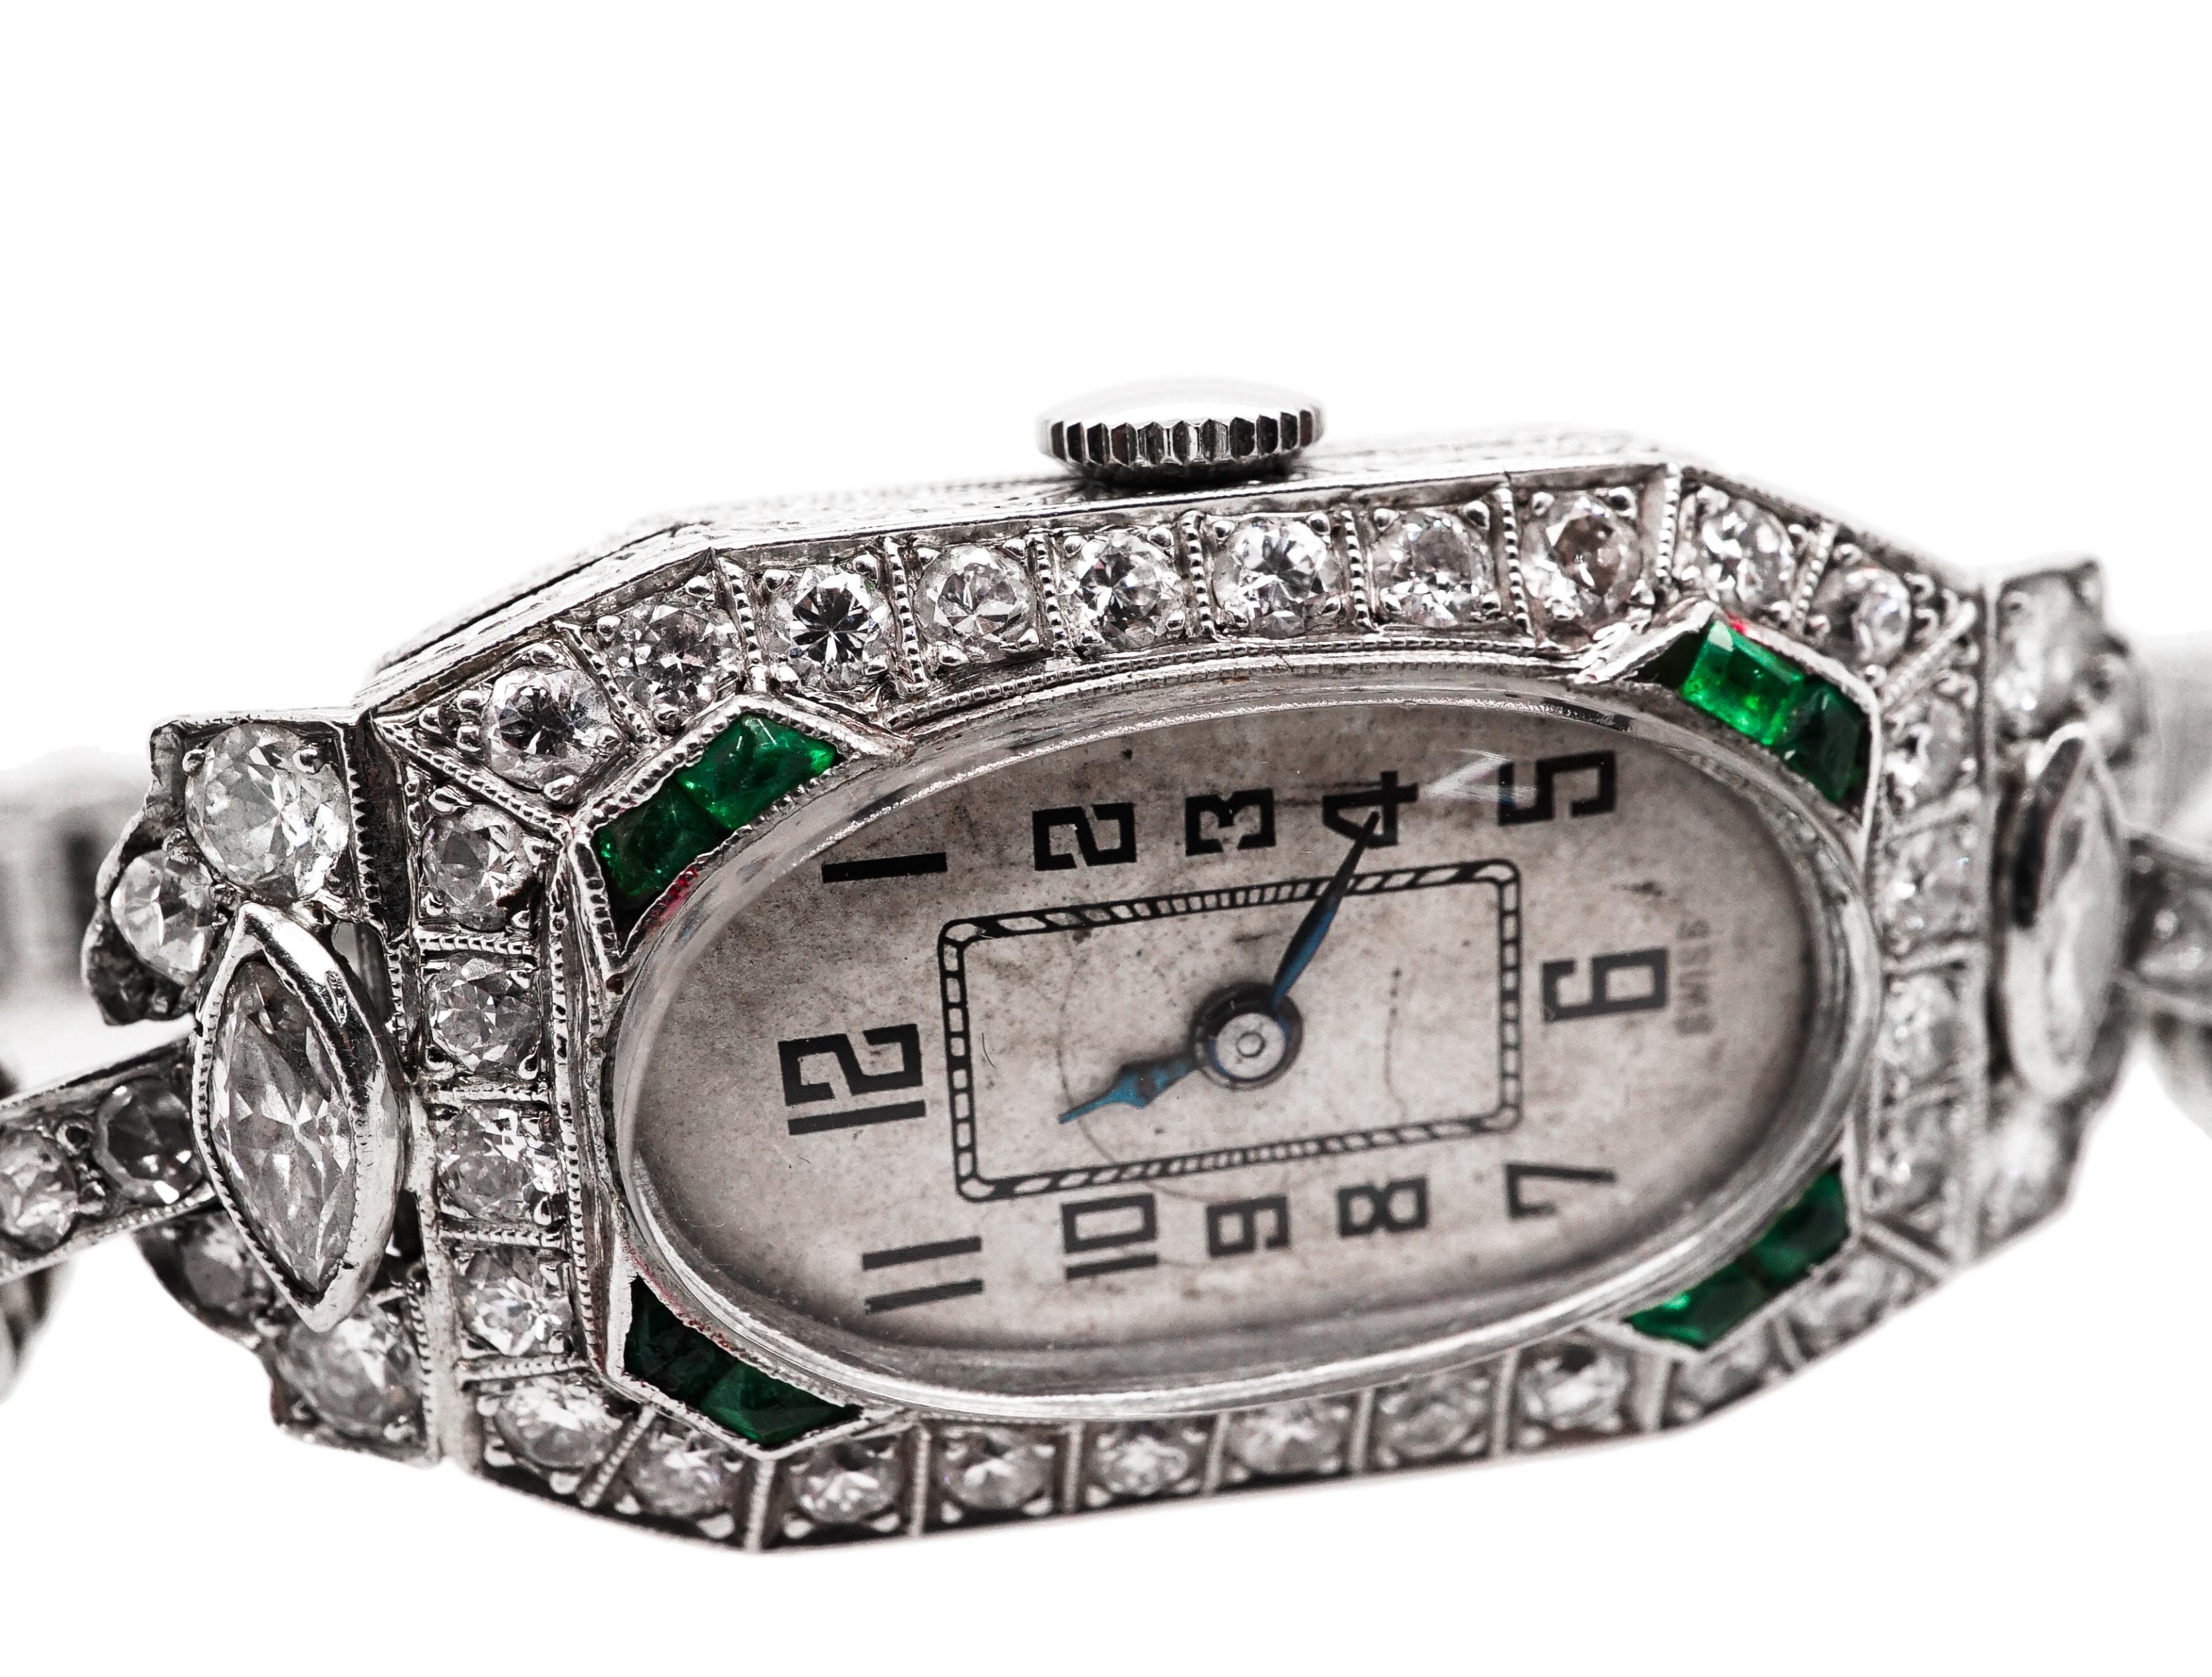 Mechanische Armbanduhr aus Platin, Diamanten und Smaragden mit einem ovalen, silberfarbenen Zifferblatt mit schwarzen arabischen Ziffern in einem modifizierten, rechteckigen, mit Diamanten besetzten Gehäuse, flankiert von zwei marquiseförmigen